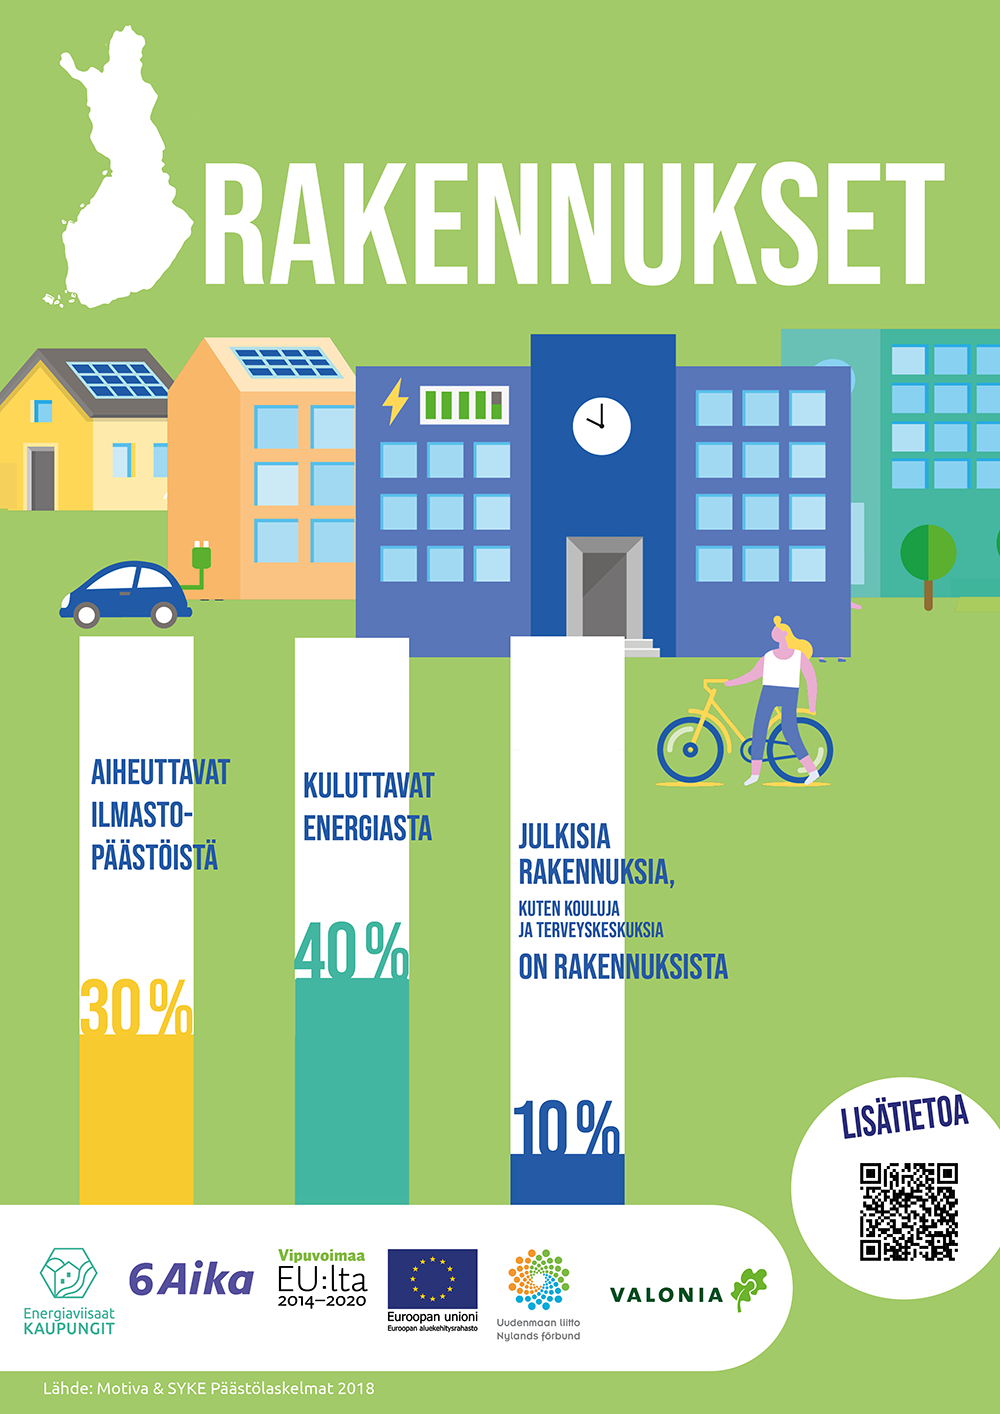 Jullste: Rakennukset aiheuttavat 30 % Suomen ilmastopäästöistä, kuluttavat 40 % energiasta. Julkisia rakennuksia on 10 % Suomen rakennuskannasta